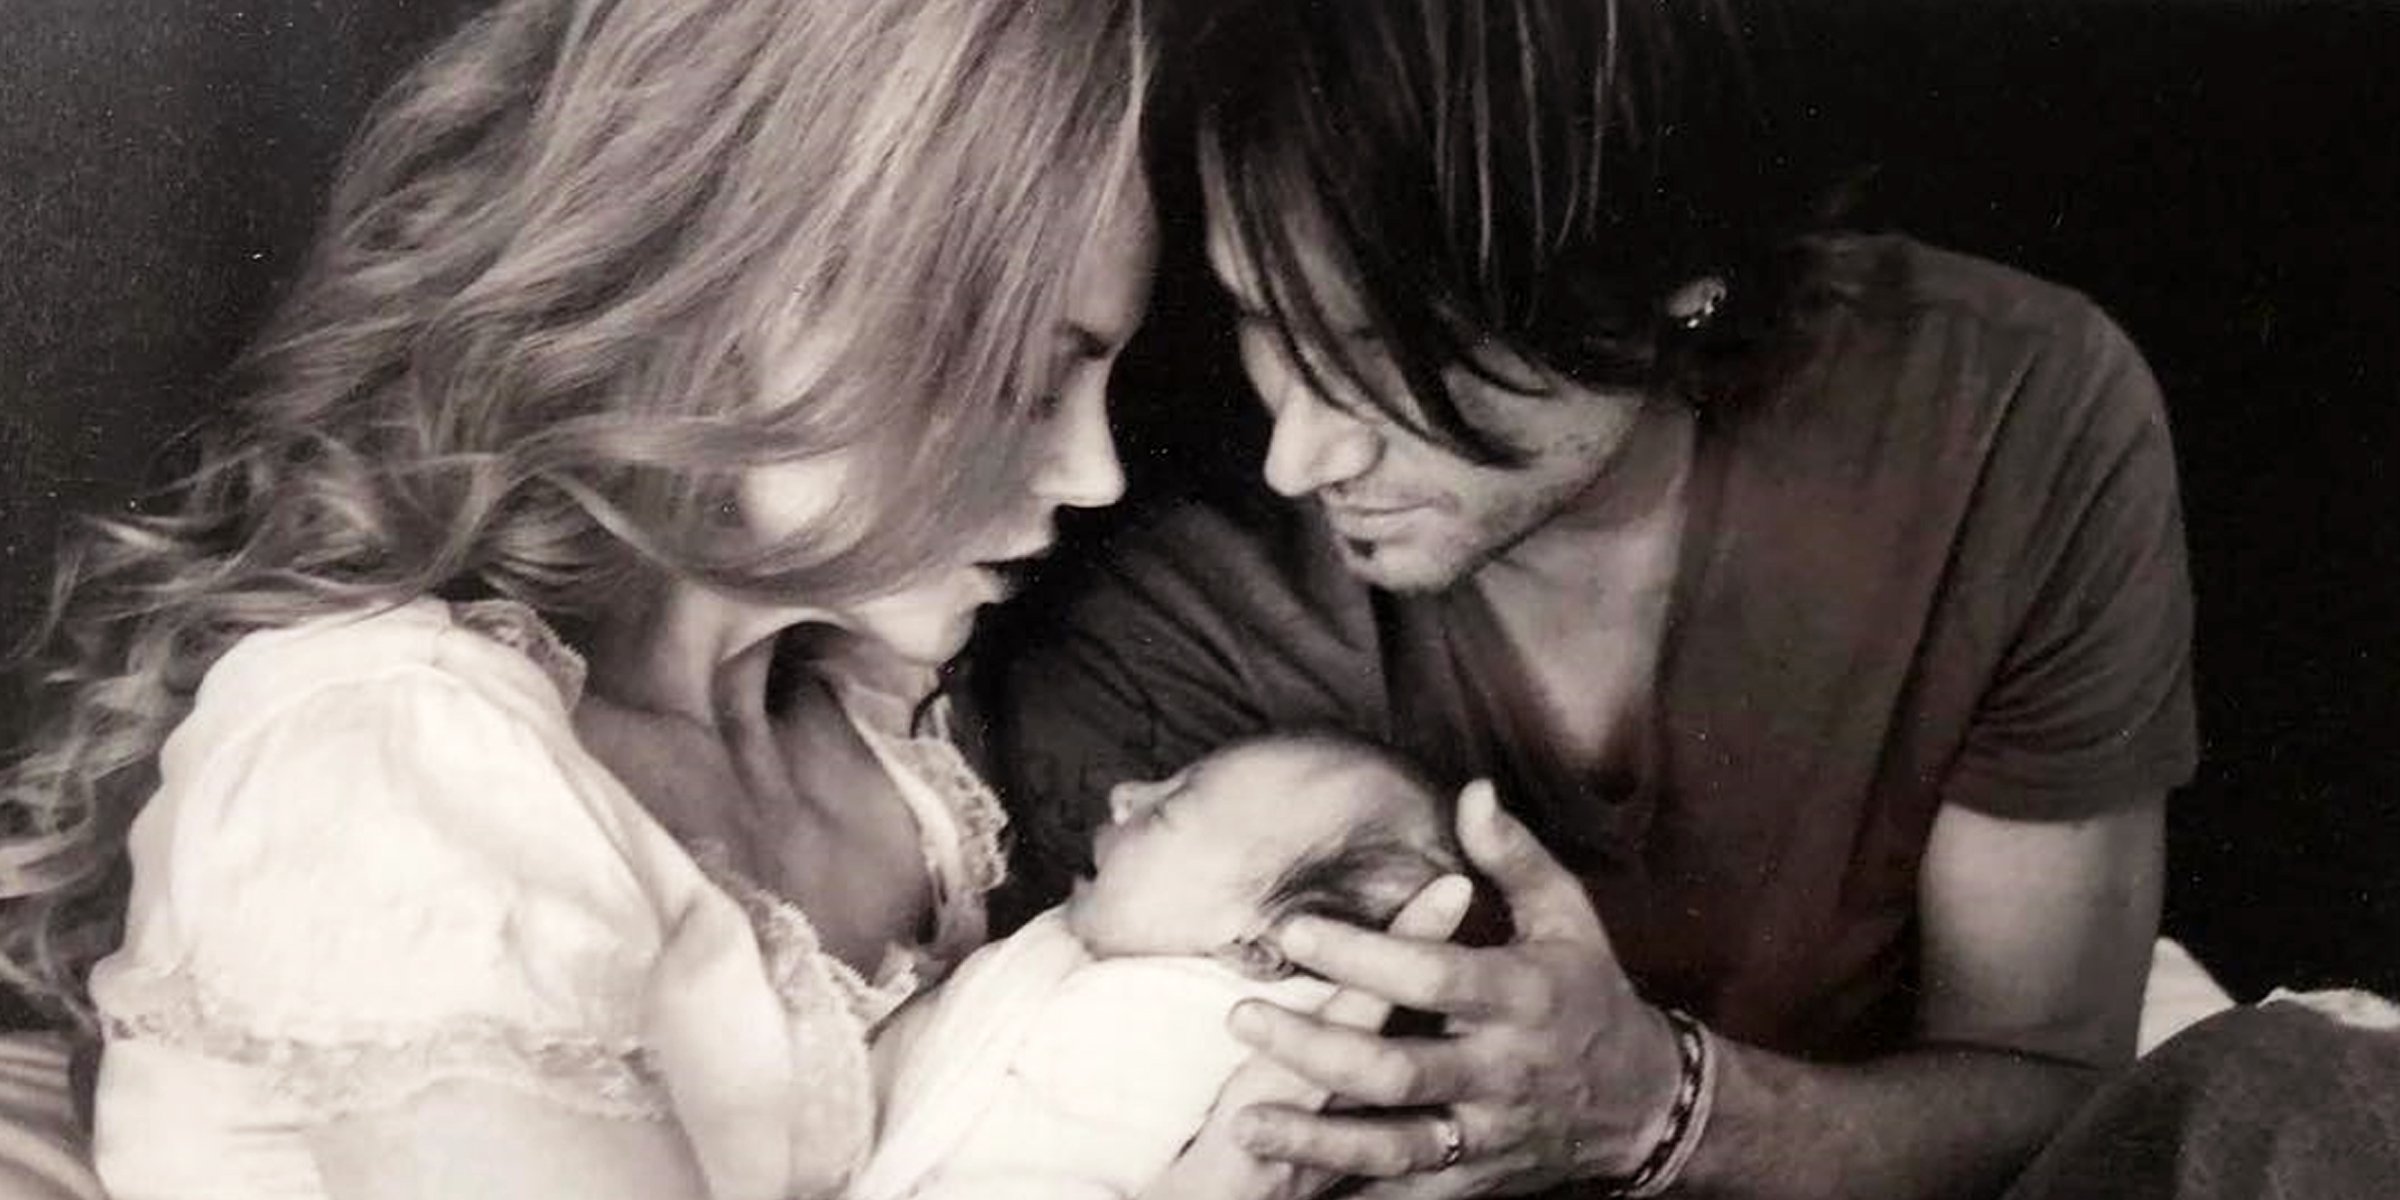 Nicole Kidman und Keith Urban mit einer ihrer Töchter. | Quelle: Instagram/nicolekidman